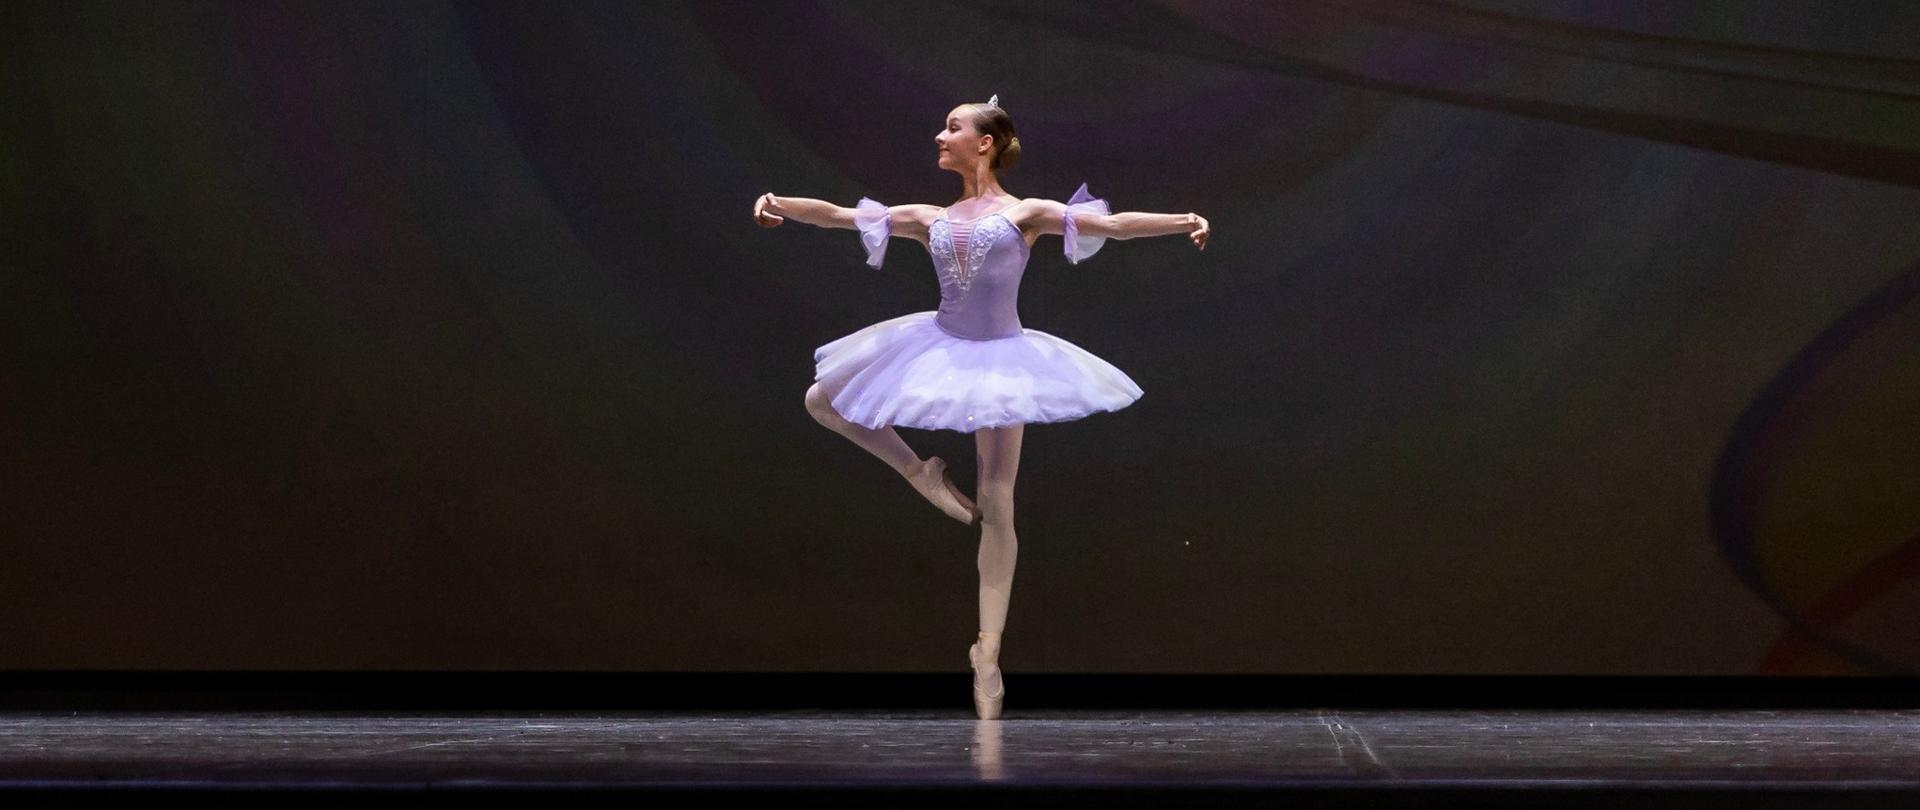 Zdjęcie Zuzanny Boryczki na scenie, uczennica w pozie baletowej ubrana w liliową paczkę klasyczną. Czarne tło. 